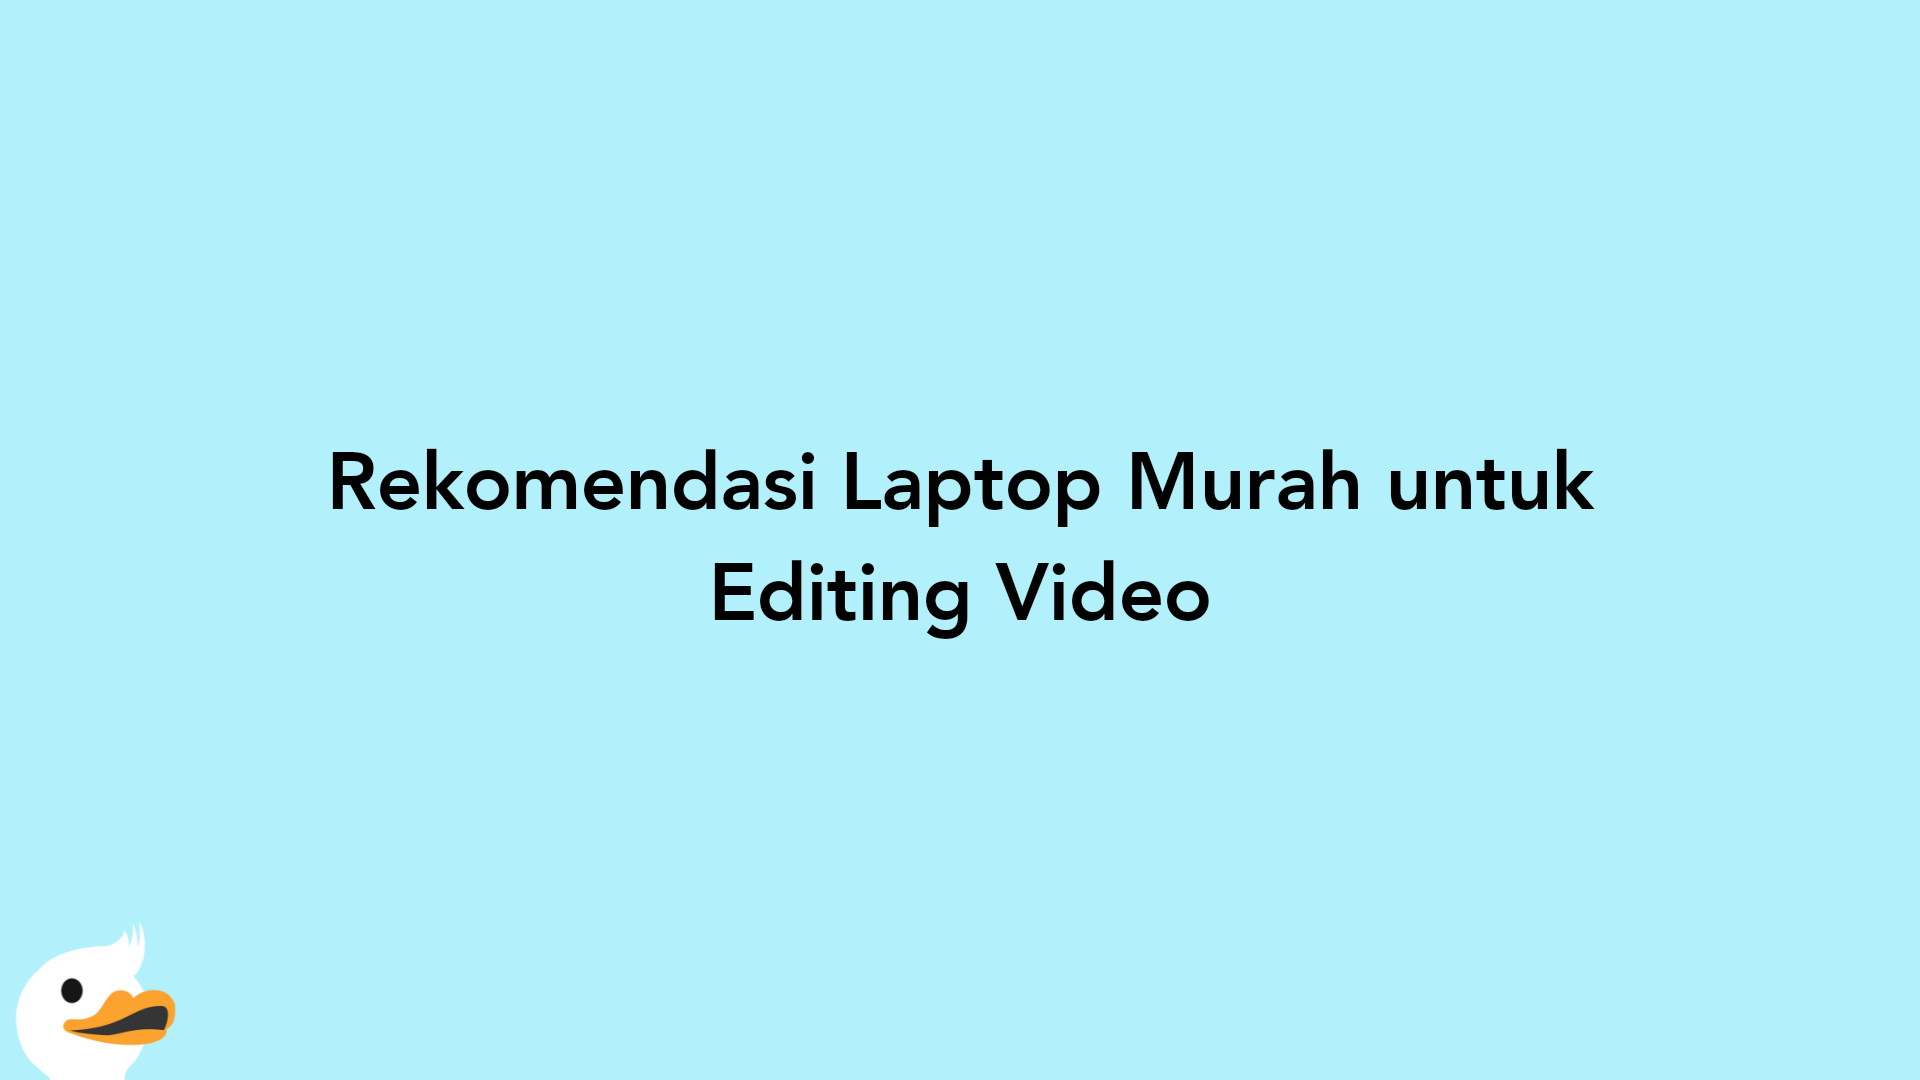 Rekomendasi Laptop Murah untuk Editing Video